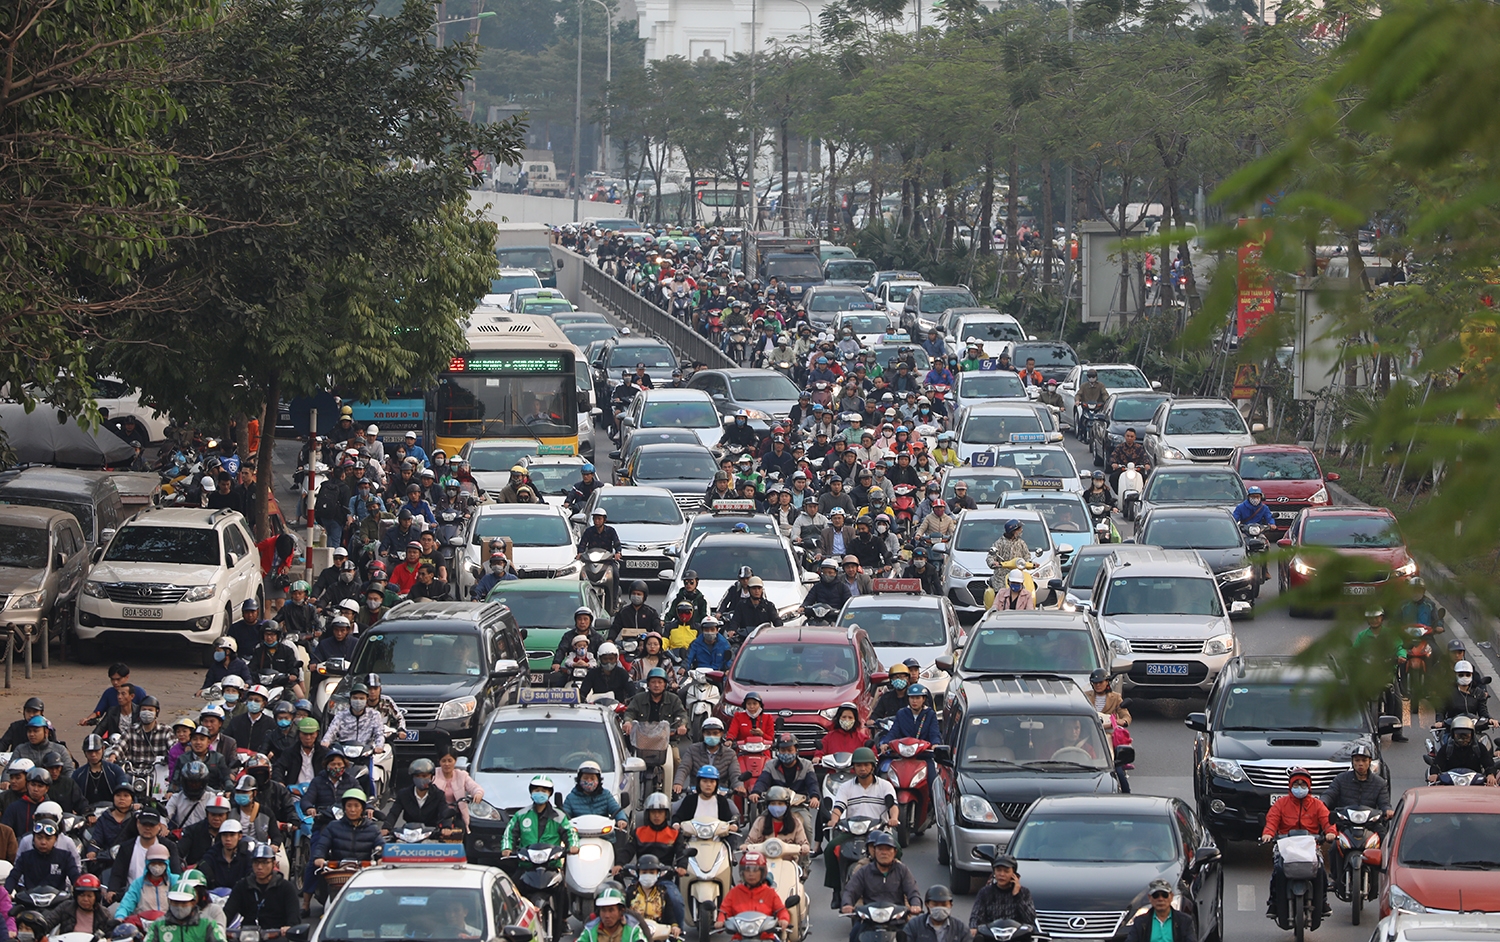 Hà Nội dành gần 1.900 tỷ đồng quyết tâm đẩy lùi ùn tắc giao thông